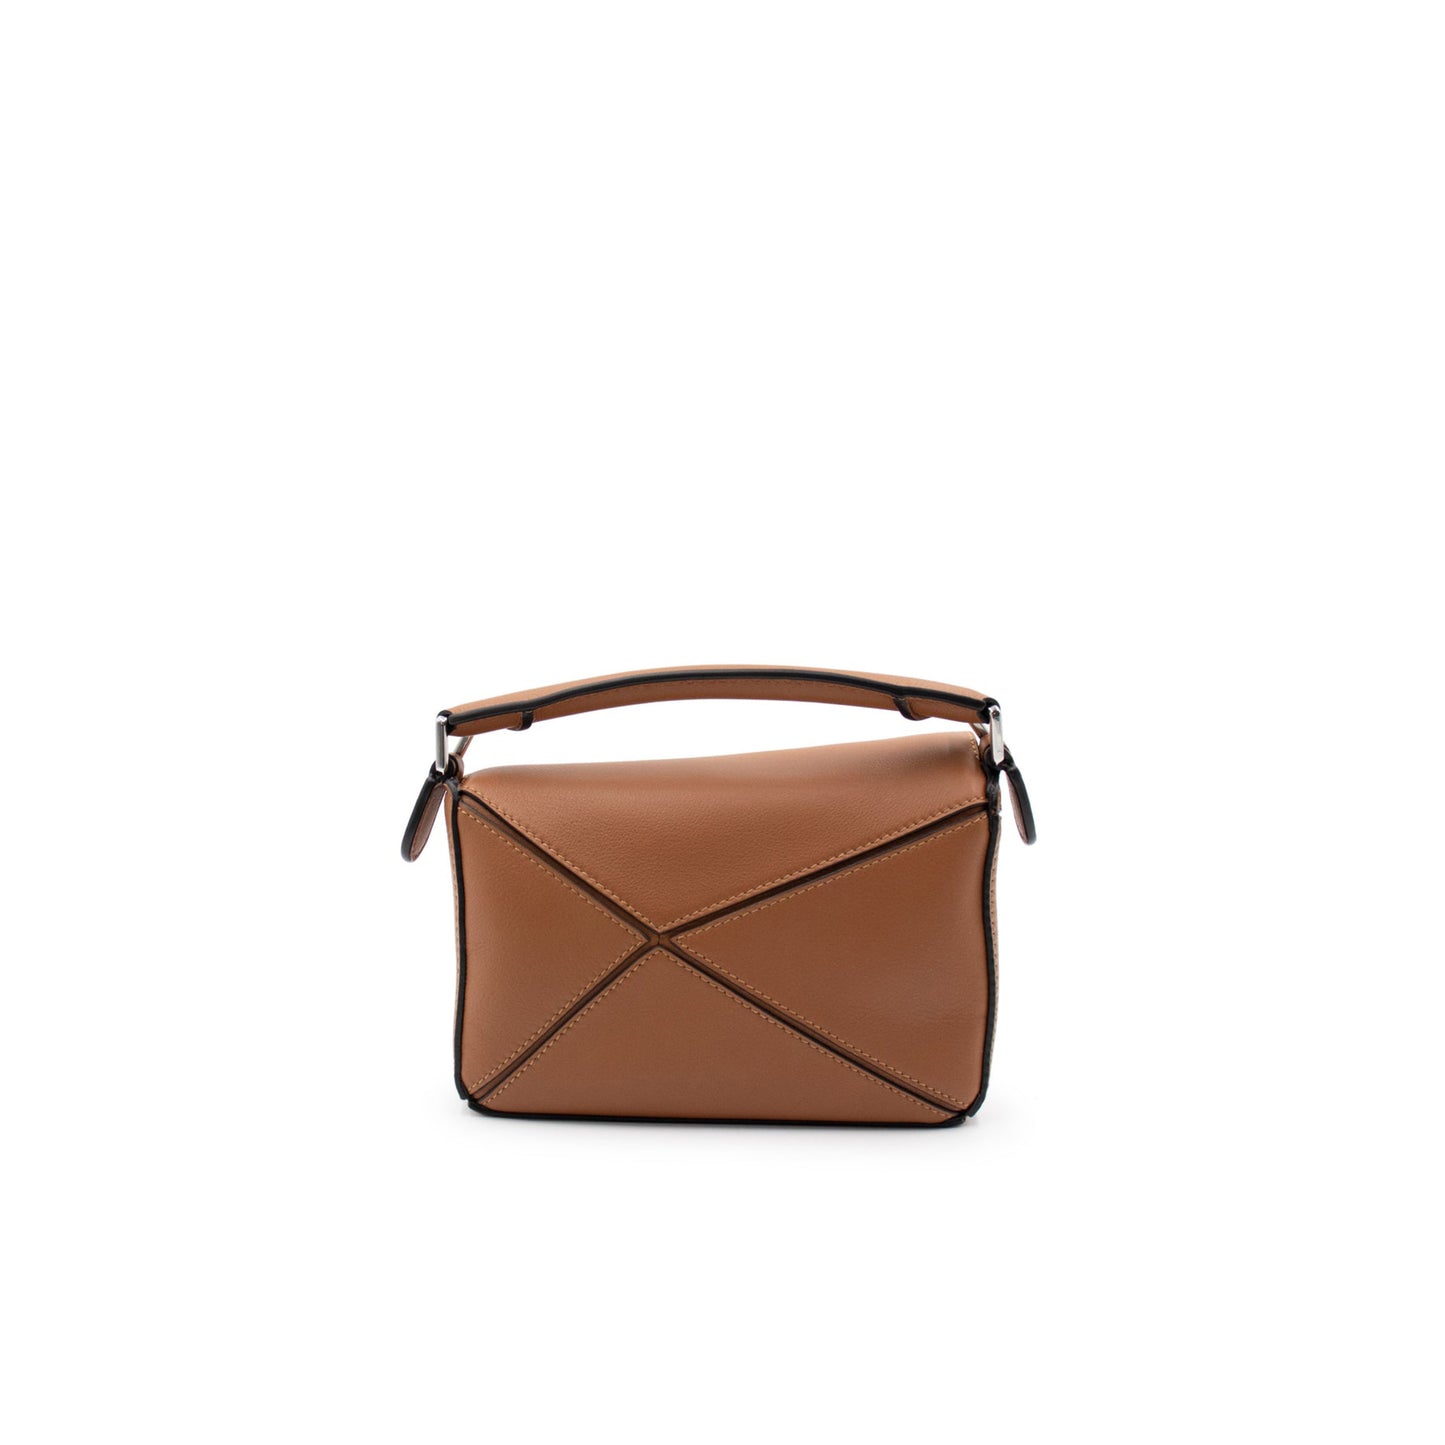 Mini Puzzle Bag in Classic Calfskin in Tan